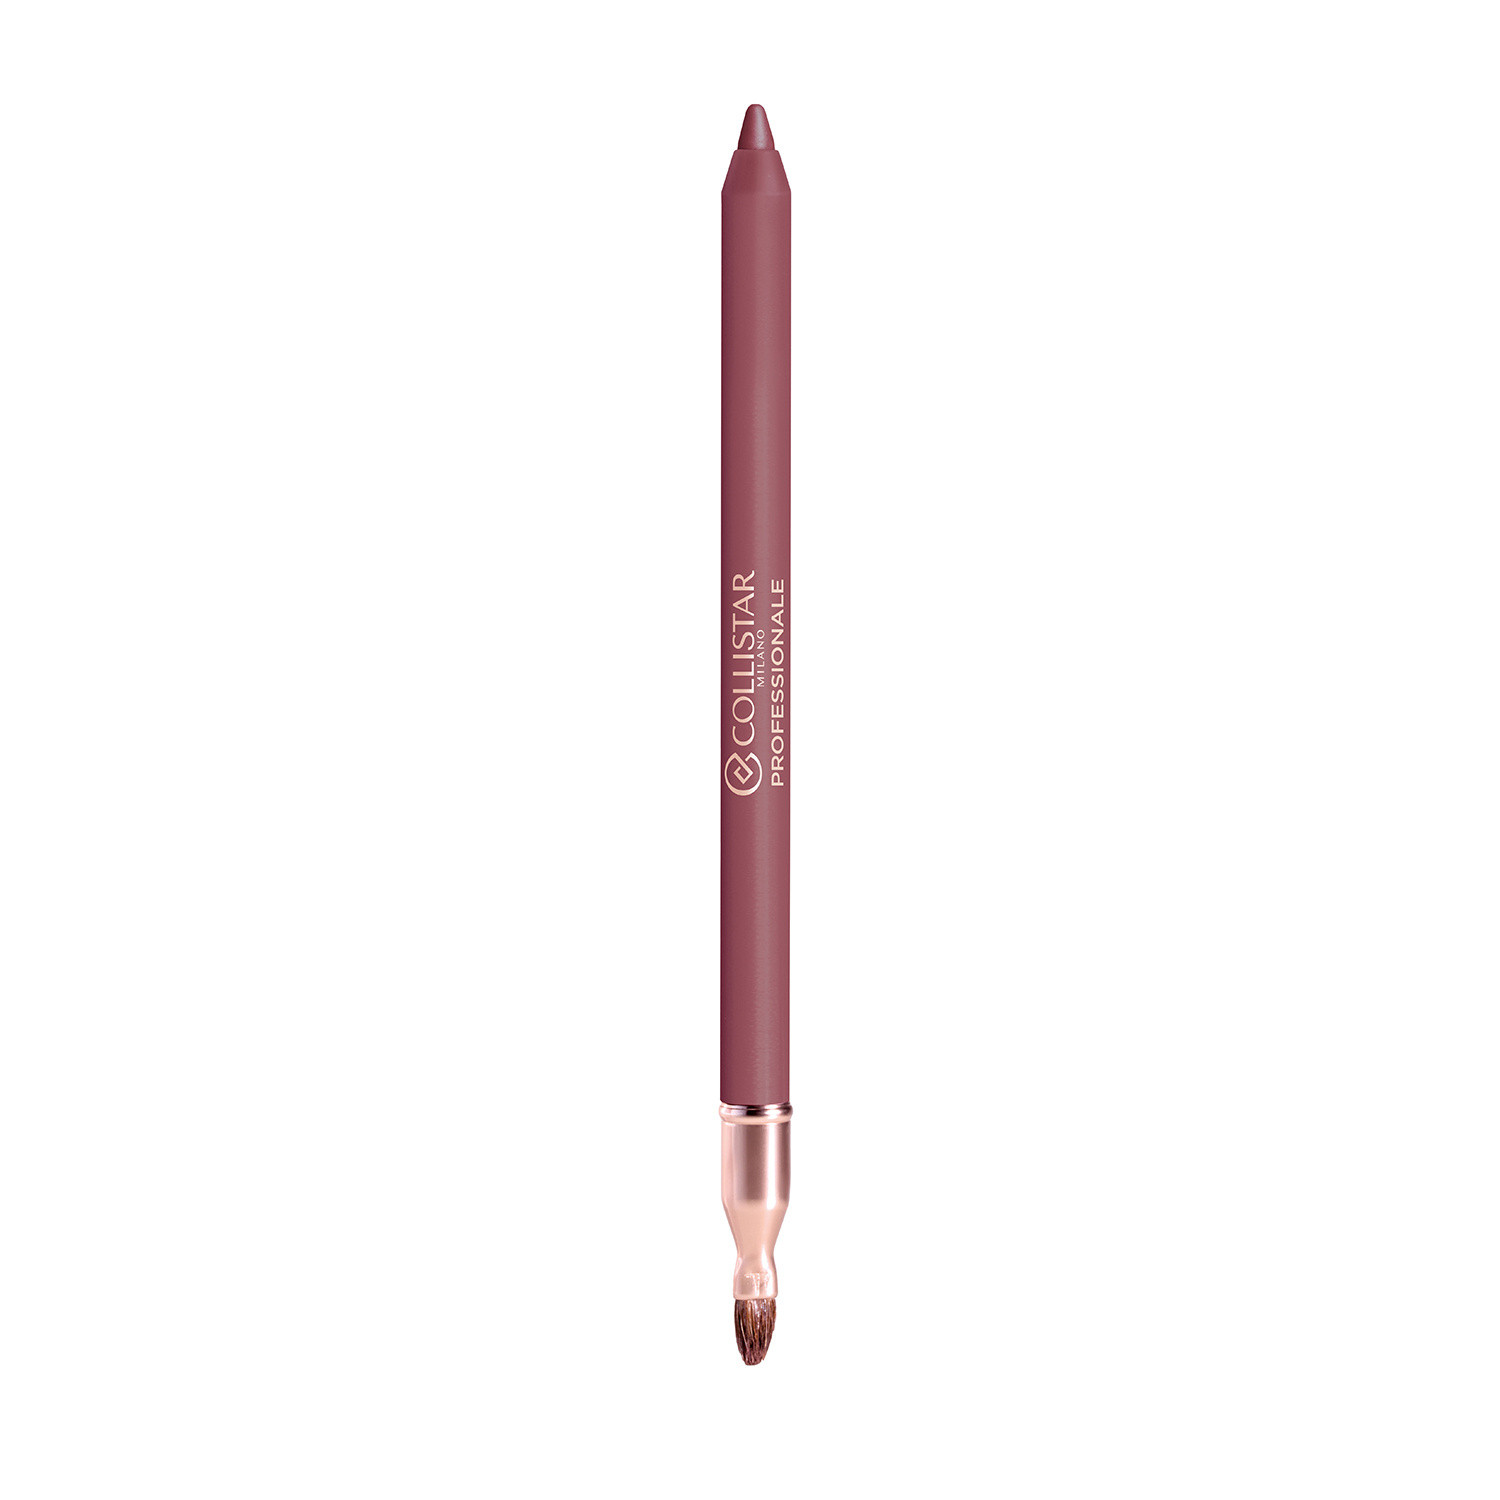 Collistar - Professionale matita labbra lunga durata - 112 Iris Fiorentino, Rosa scuro, large image number 1